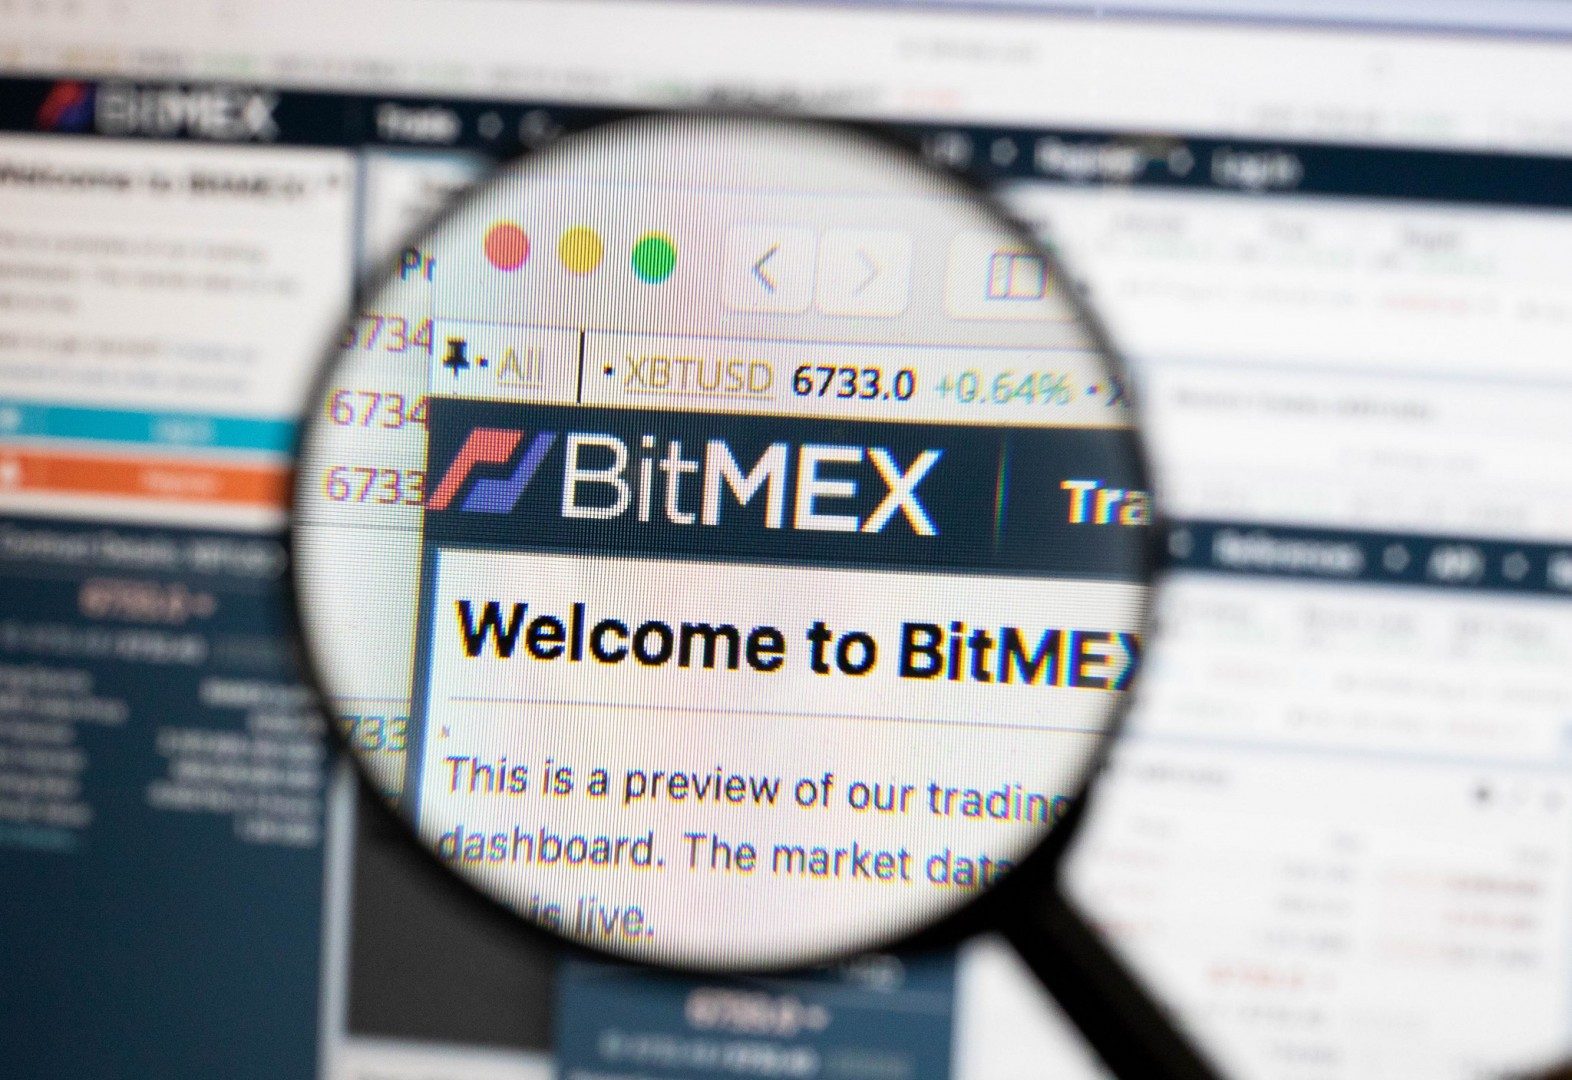 Open Interest trên BitMEX đã giảm dưới 1 tỷ USD, dấu hiệu hồi phục của Bitcoin là đây?